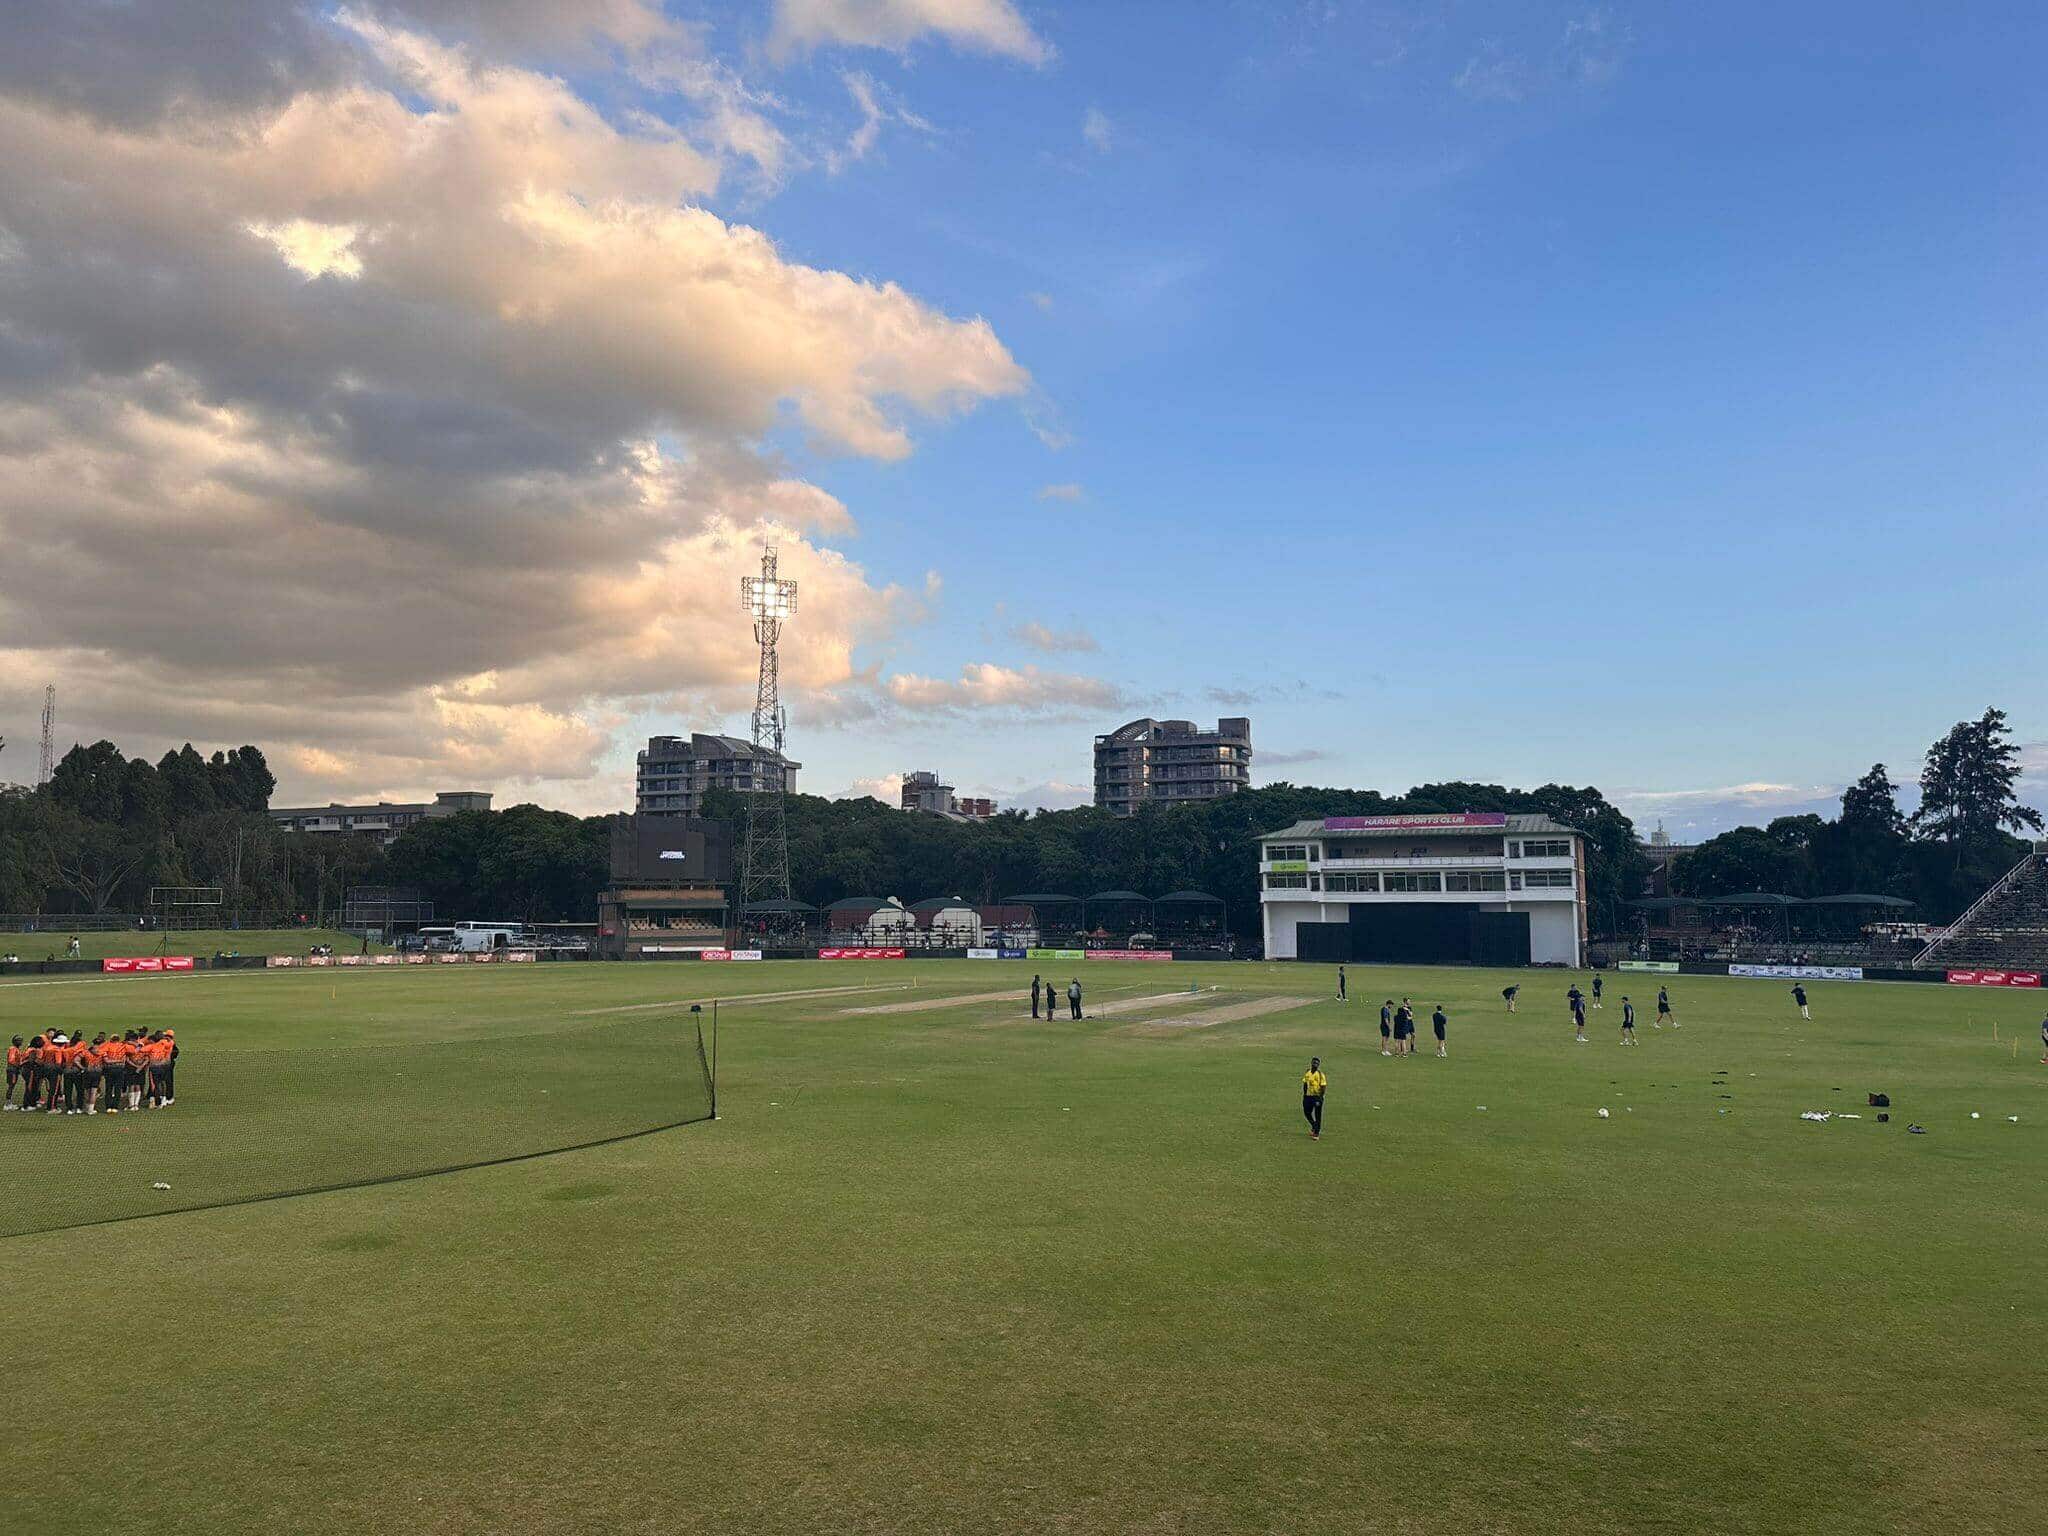 ज़िम्बाब्वे vs भारत, पहला T20i; मैच के लिए हरारे स्पोर्ट्स क्लब की मौसम रिपोर्ट